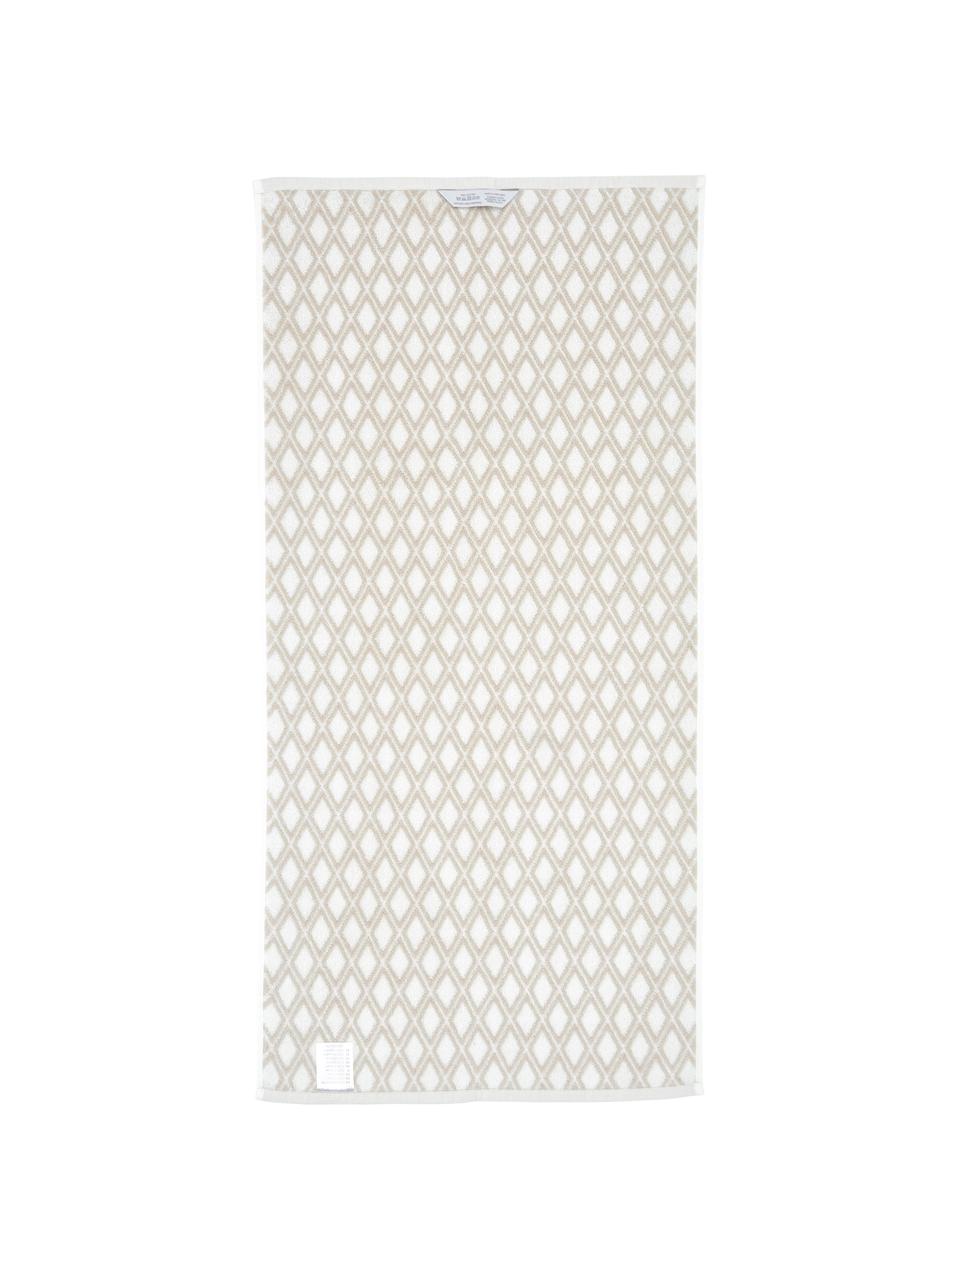 Wende-Handtuch Ava mit grafischem Muster, Sandfarben, Cremeweiß, Handtuch, B 50 x L 100 cm, 2 Stück